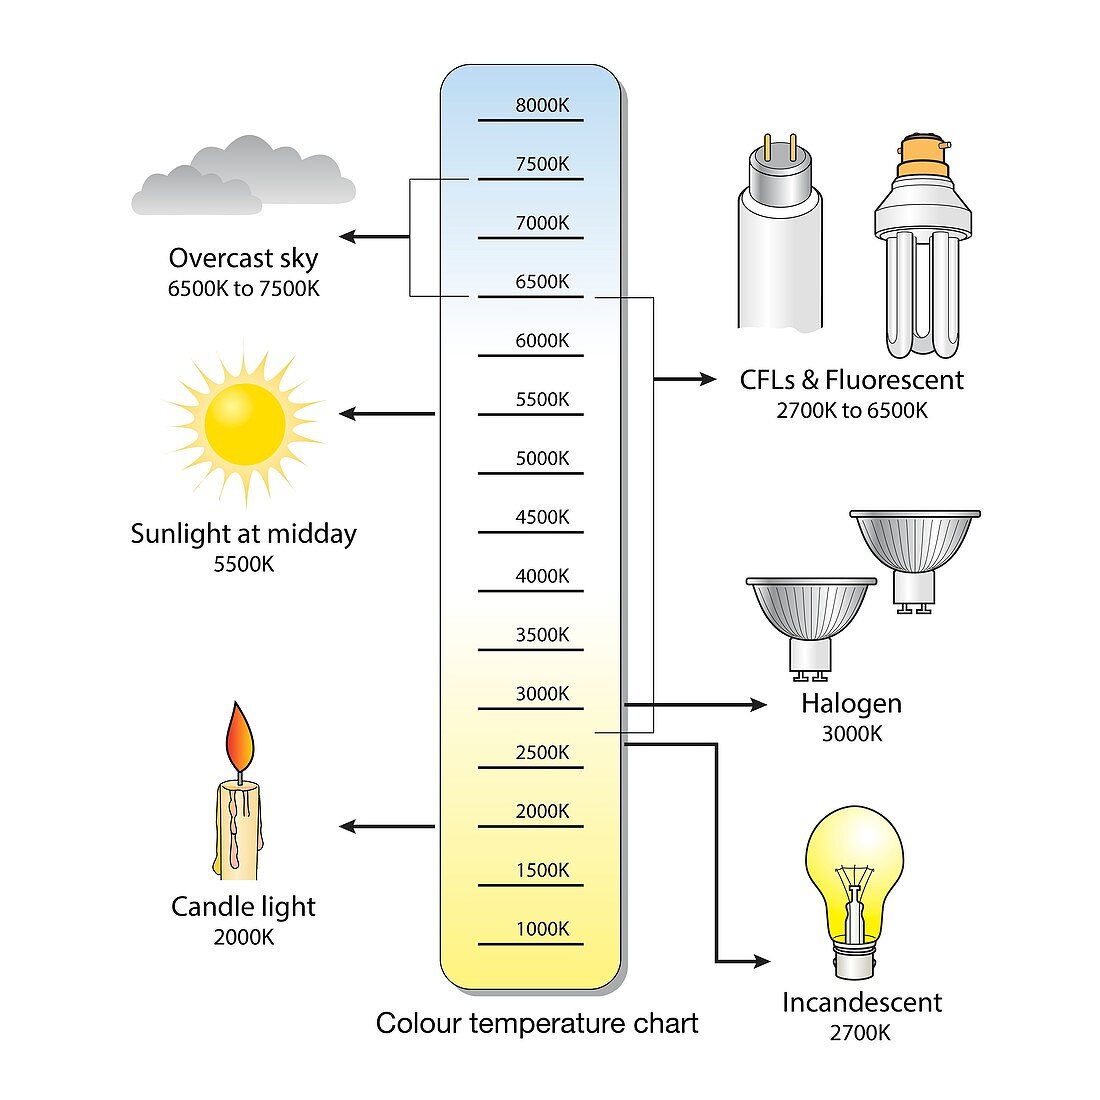 Colour temperature spectrum, illustration